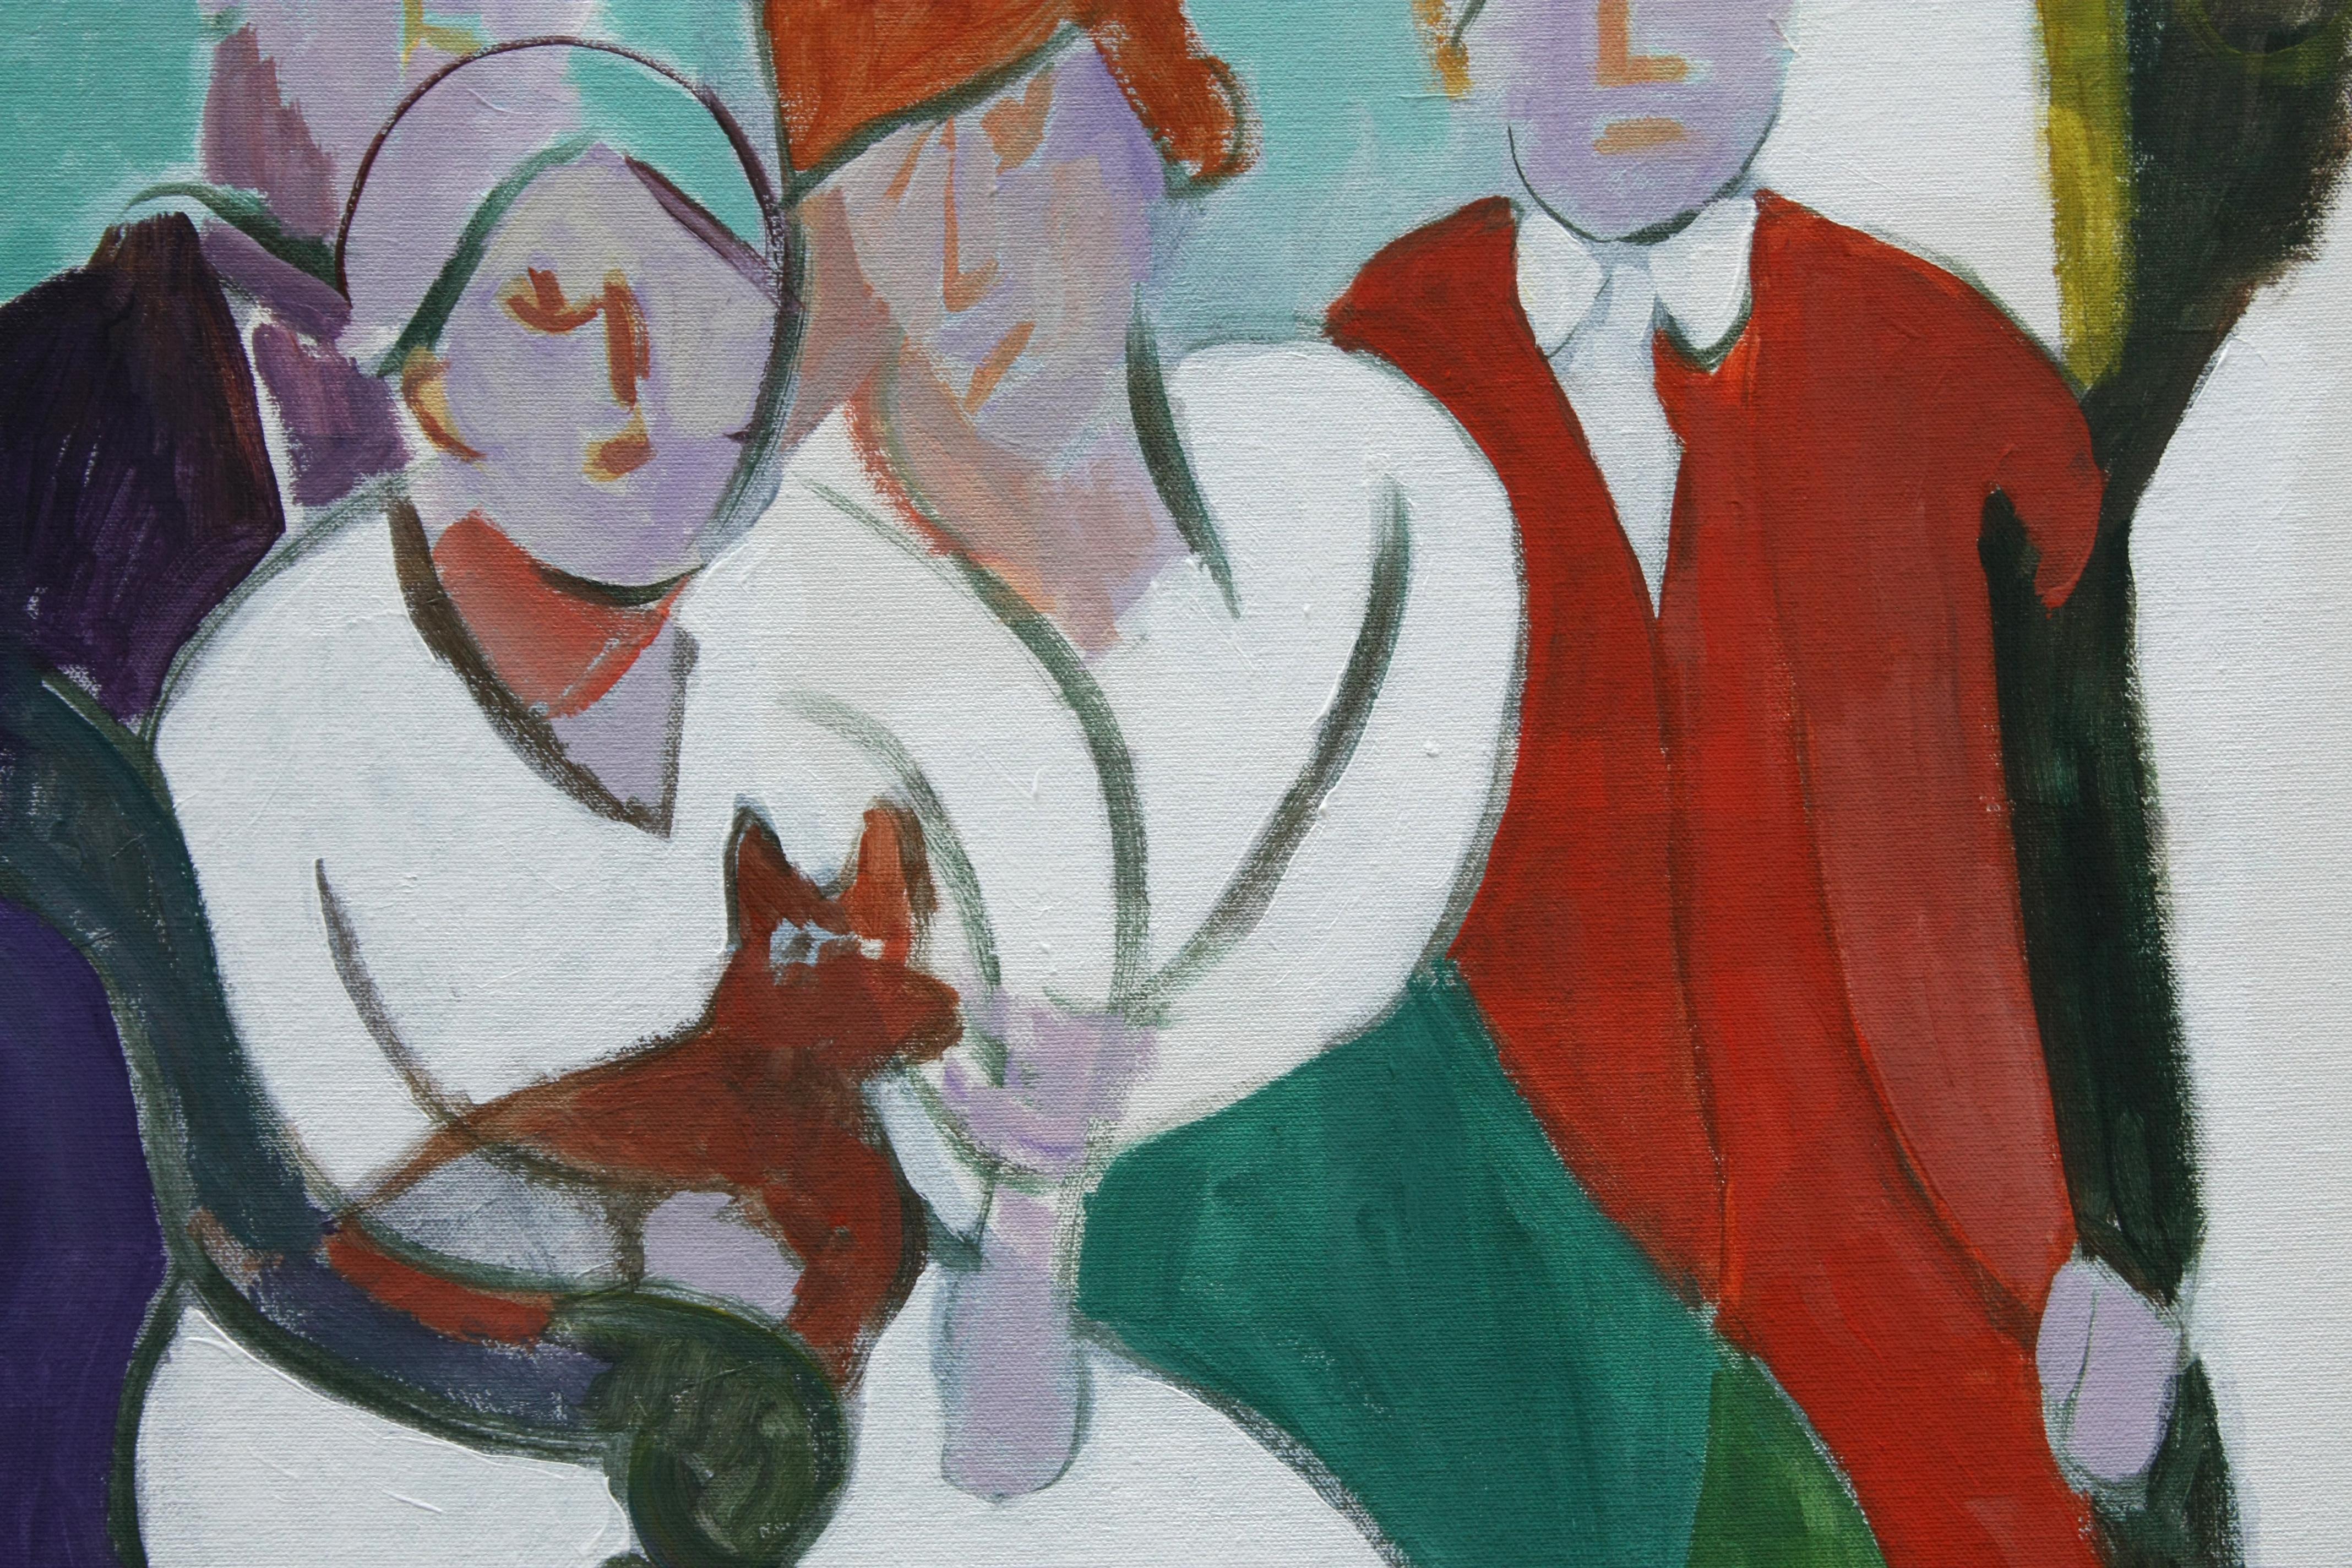 <p>Kommentare des Künstlers<br>Der Künstler Robert Hofherr illustriert ein expressionistisches Porträt einer viktorianischen Familie und ihres Hundes. Beeinflusst von ähnlichen Werken Picassos, verwandelt sich diese Interpretation eines formalen